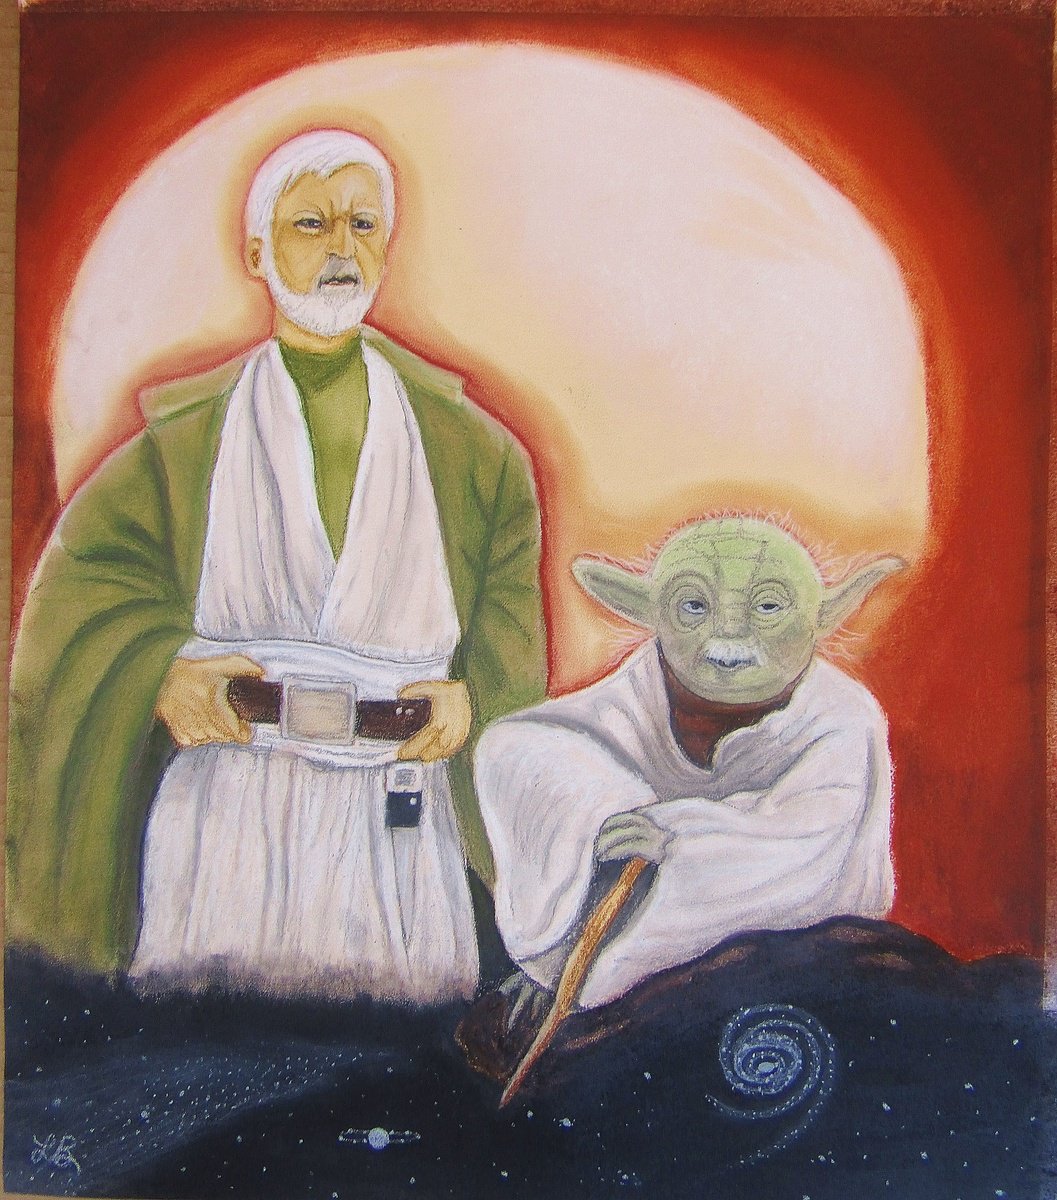 Star Wars by Linda Burnett